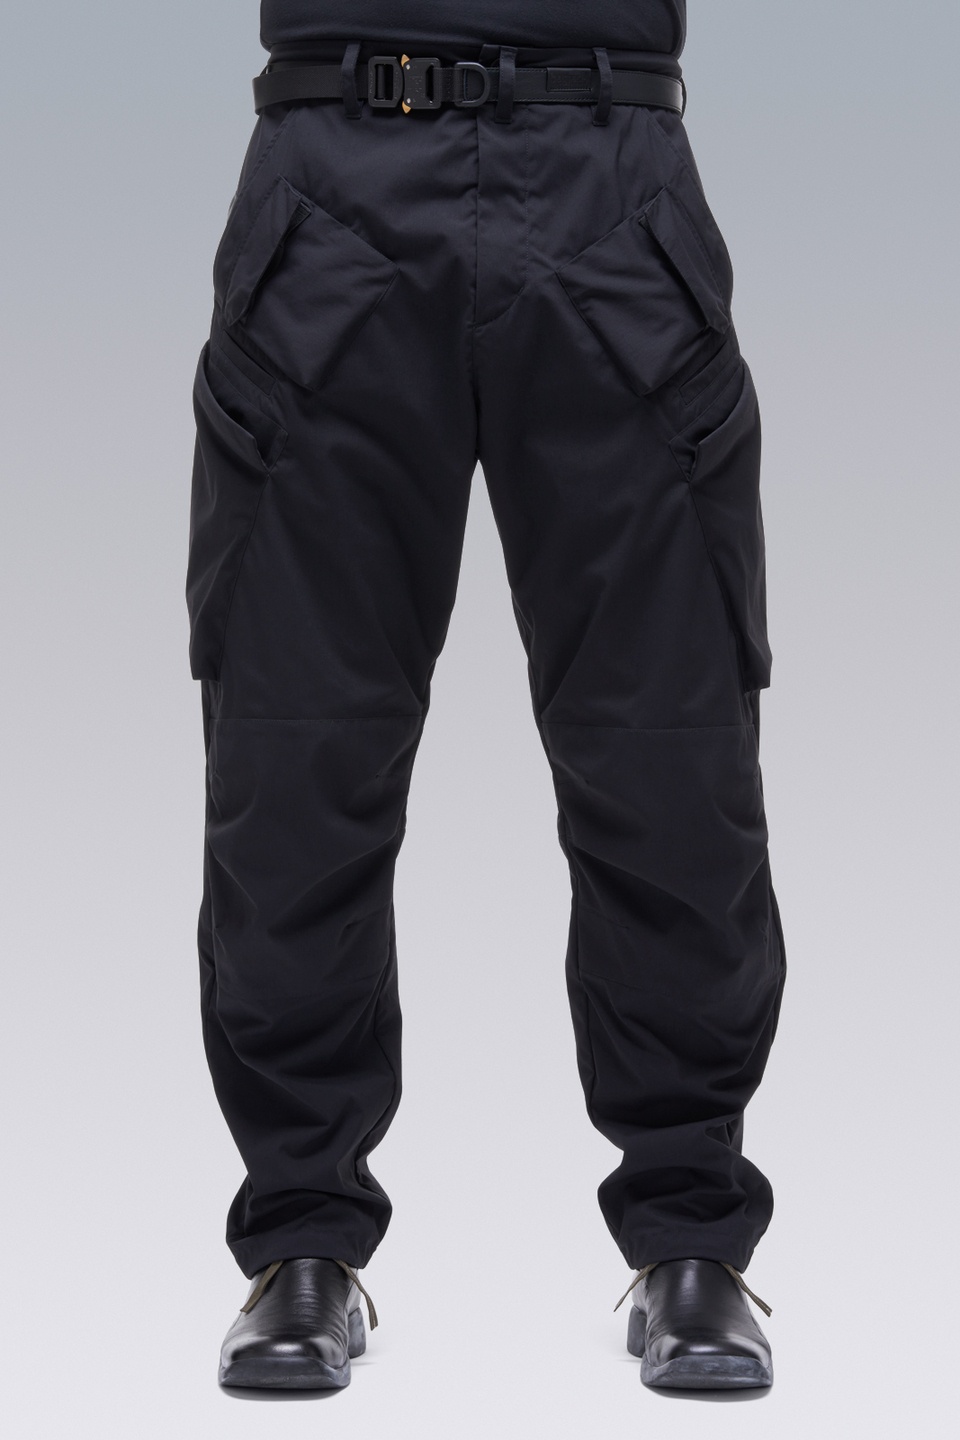 P24A-E Encapsulated Nylon Articulated BDU Trouser Black - 1